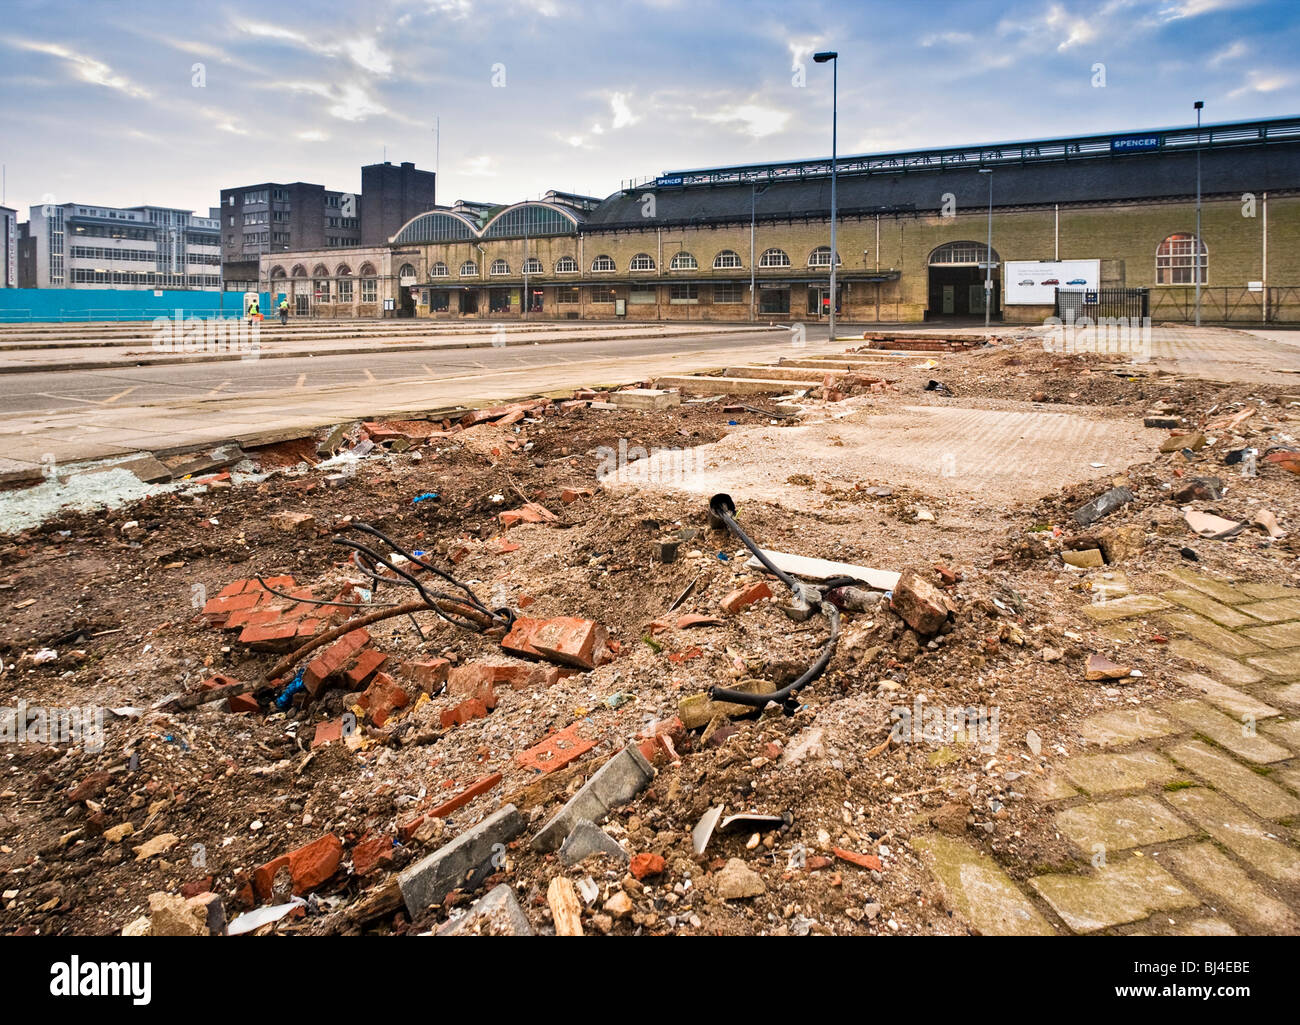 Waste Land edificio abandonado sitio, UK Foto de stock